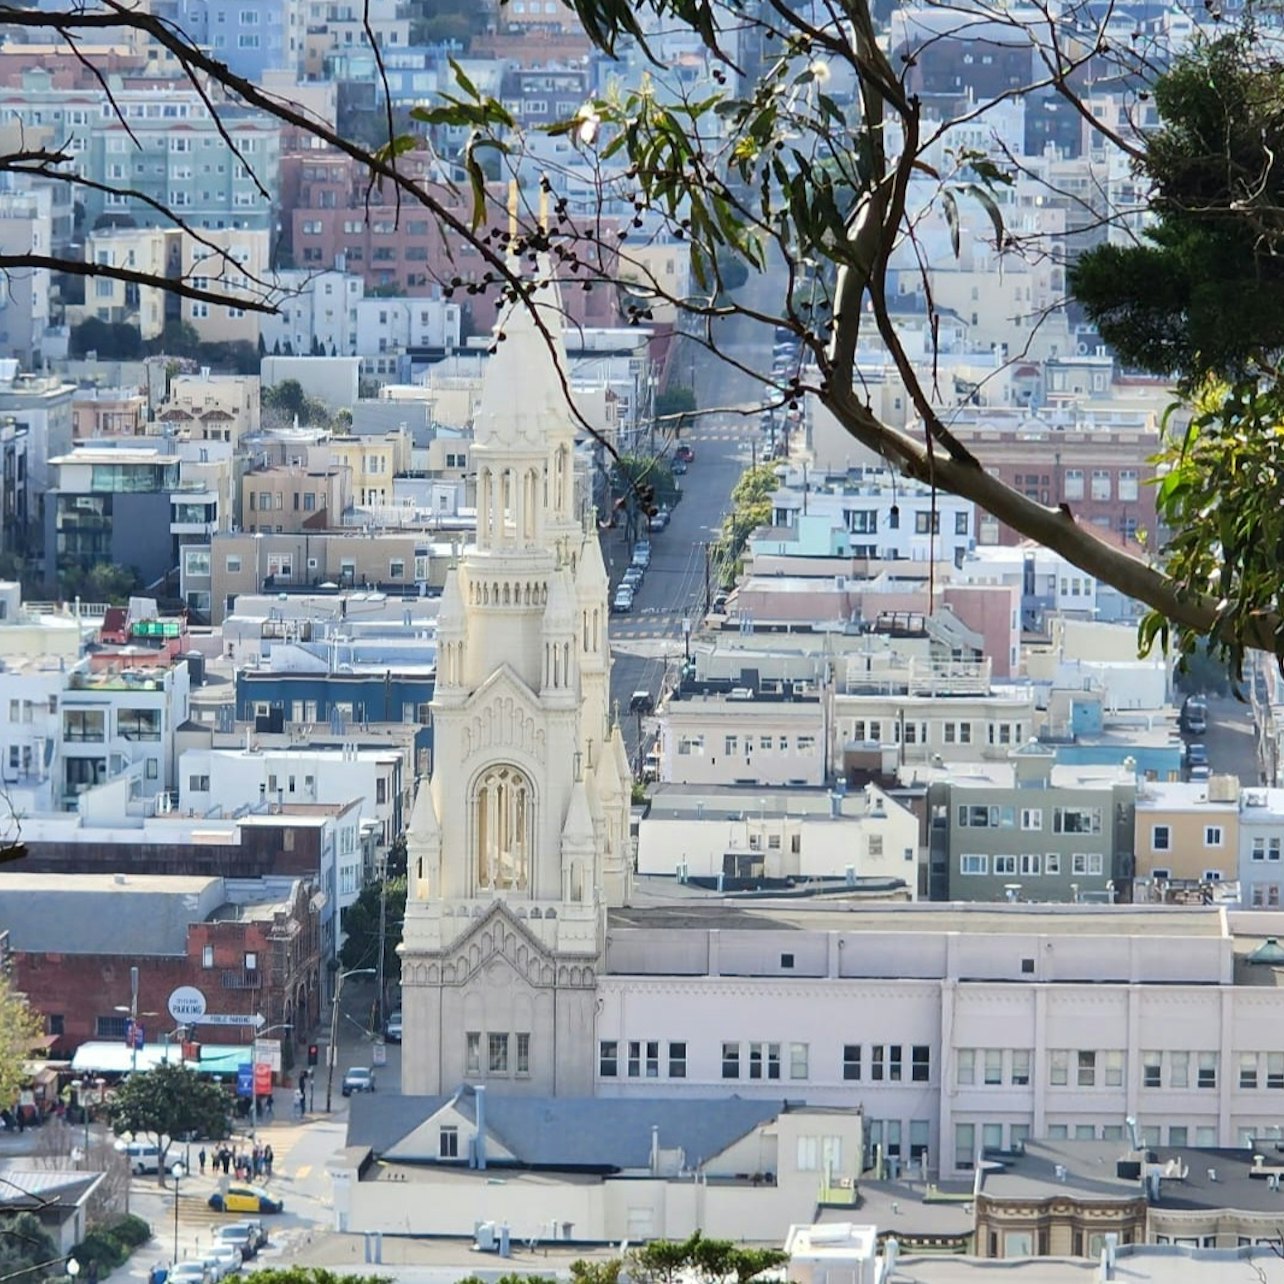 Visita matinal a la ciudad de San Francisco - Alojamientos en San Francisco